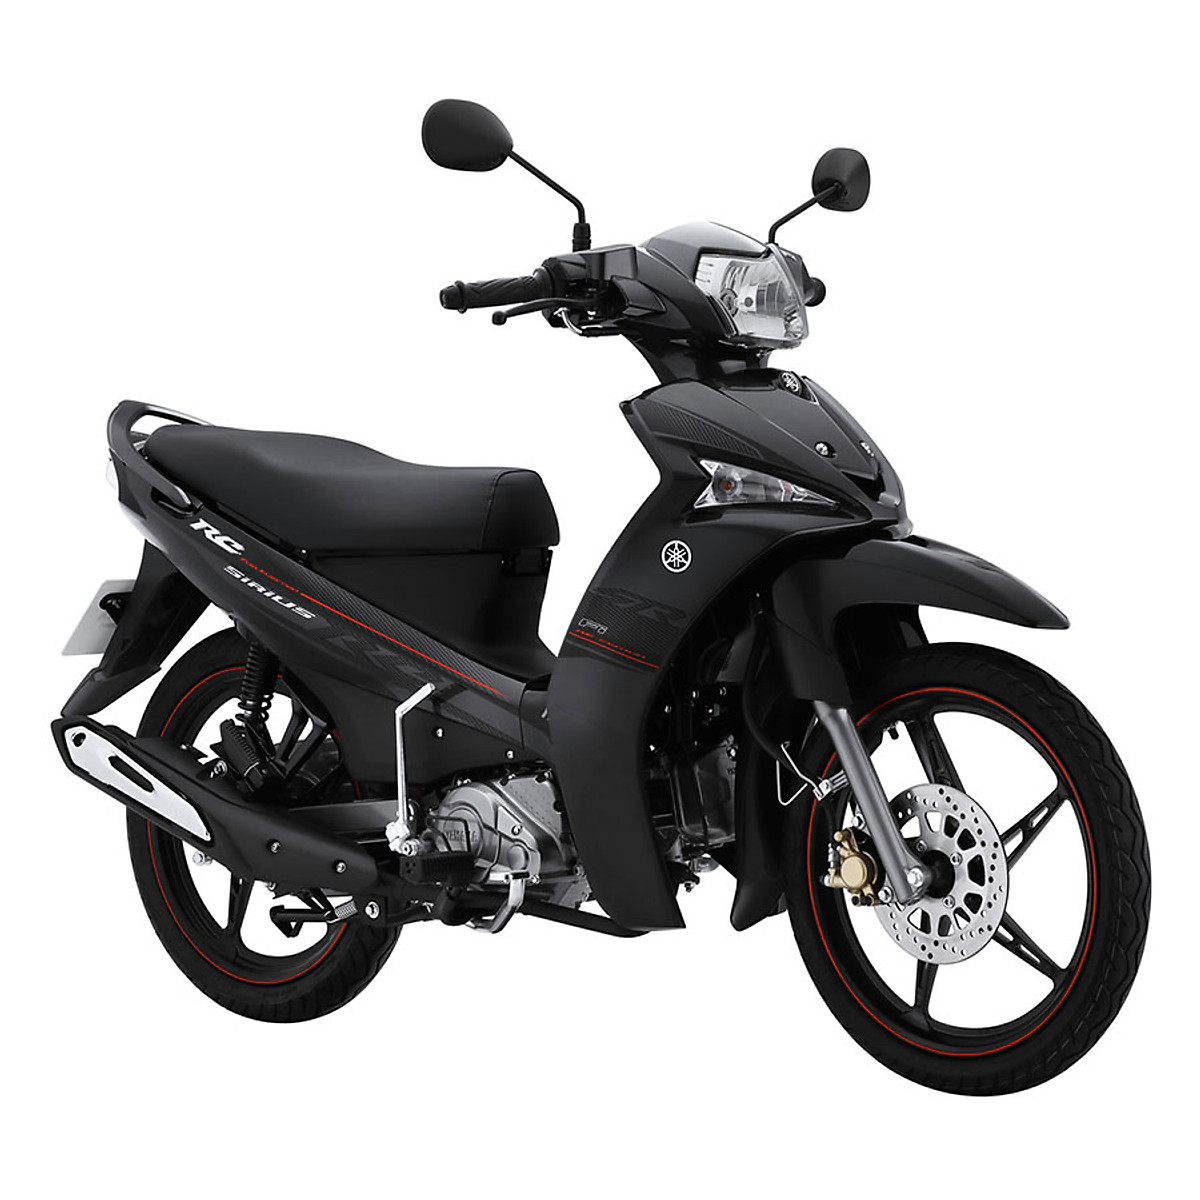 YAMAHA SIRIUS MÀU MỚI ĐẸP LẠ MẮT  GIÁ KHÔNG ĐỔI  Yamaha Motor Việt Nam